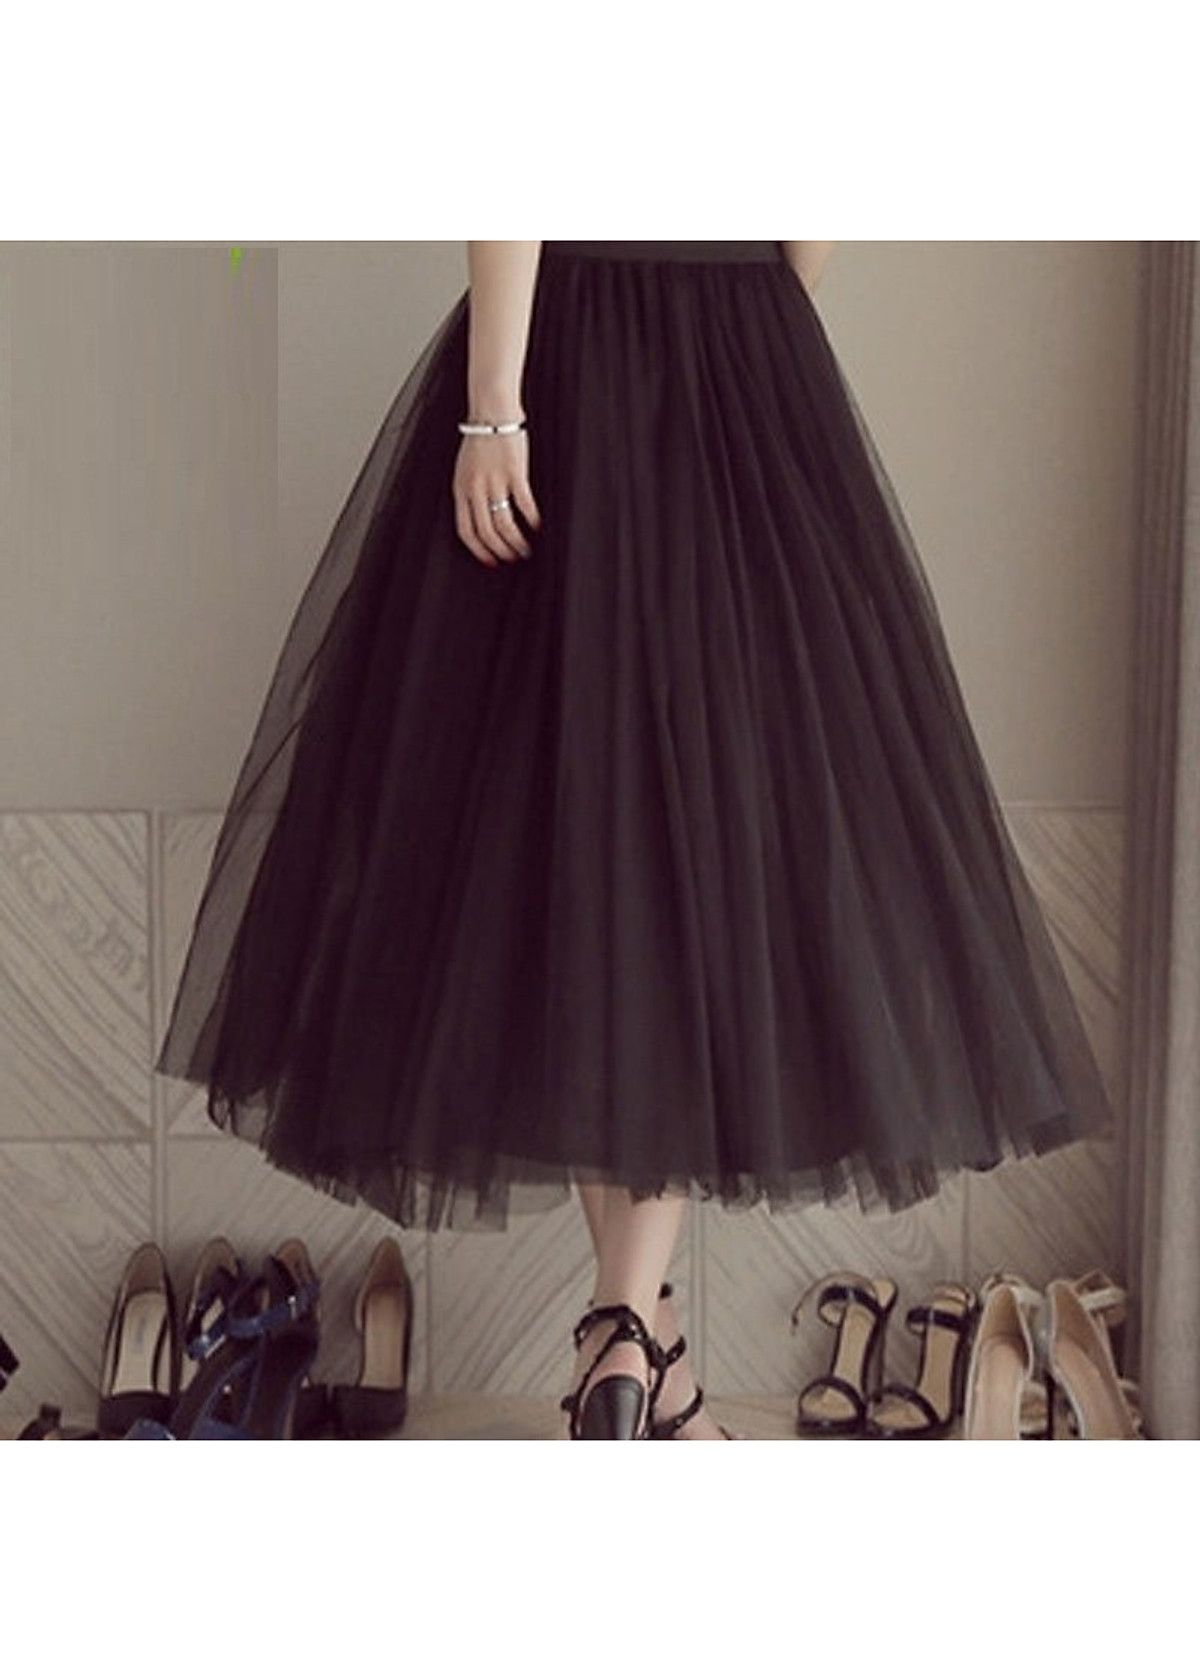 HOT 12C22B1 Chân váy tulle công chúa 3 tầng siêu siêu đẹp, lưng thun  freesize, vải tuyn cao cấp đẹp y hình hình ảnh thật | Shopee Việt Nam